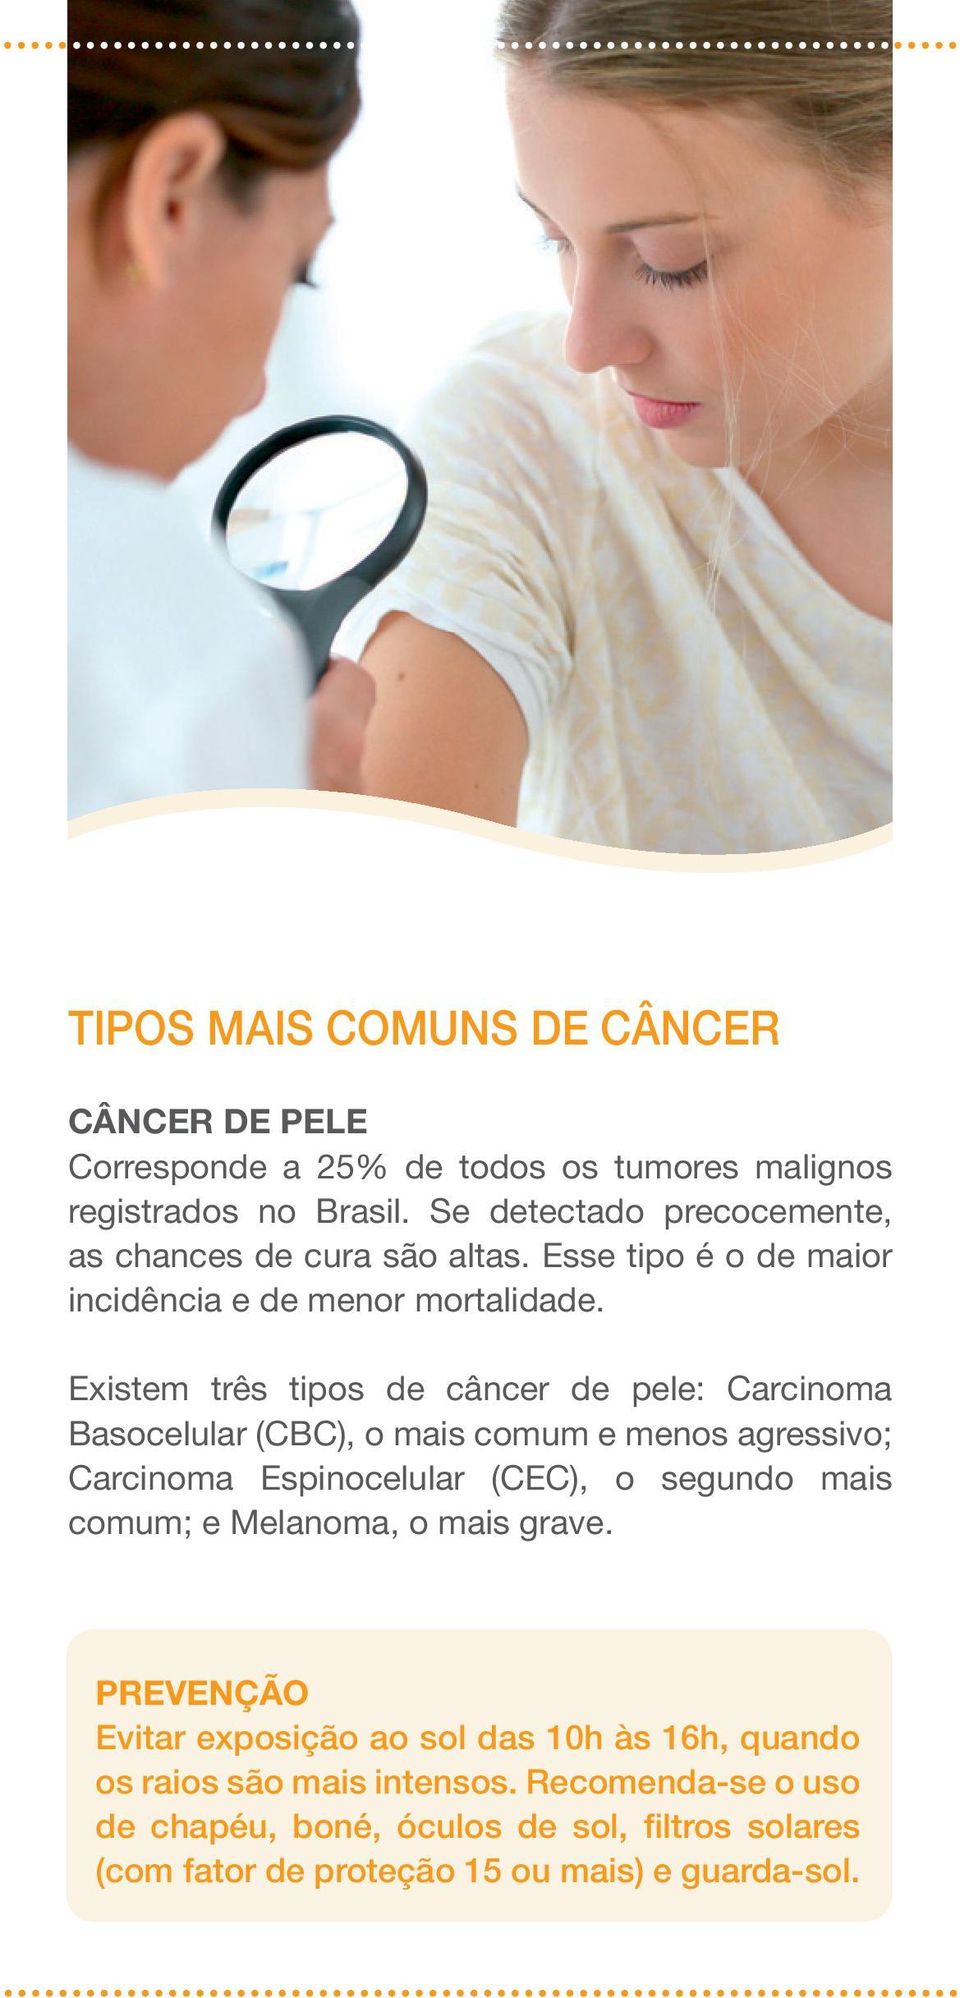 Existem três tipos de câncer de pele: Carcinoma Basocelular (CBC), o mais comum e menos agressivo; Carcinoma Espinocelular (CEC), o segundo mais comum;